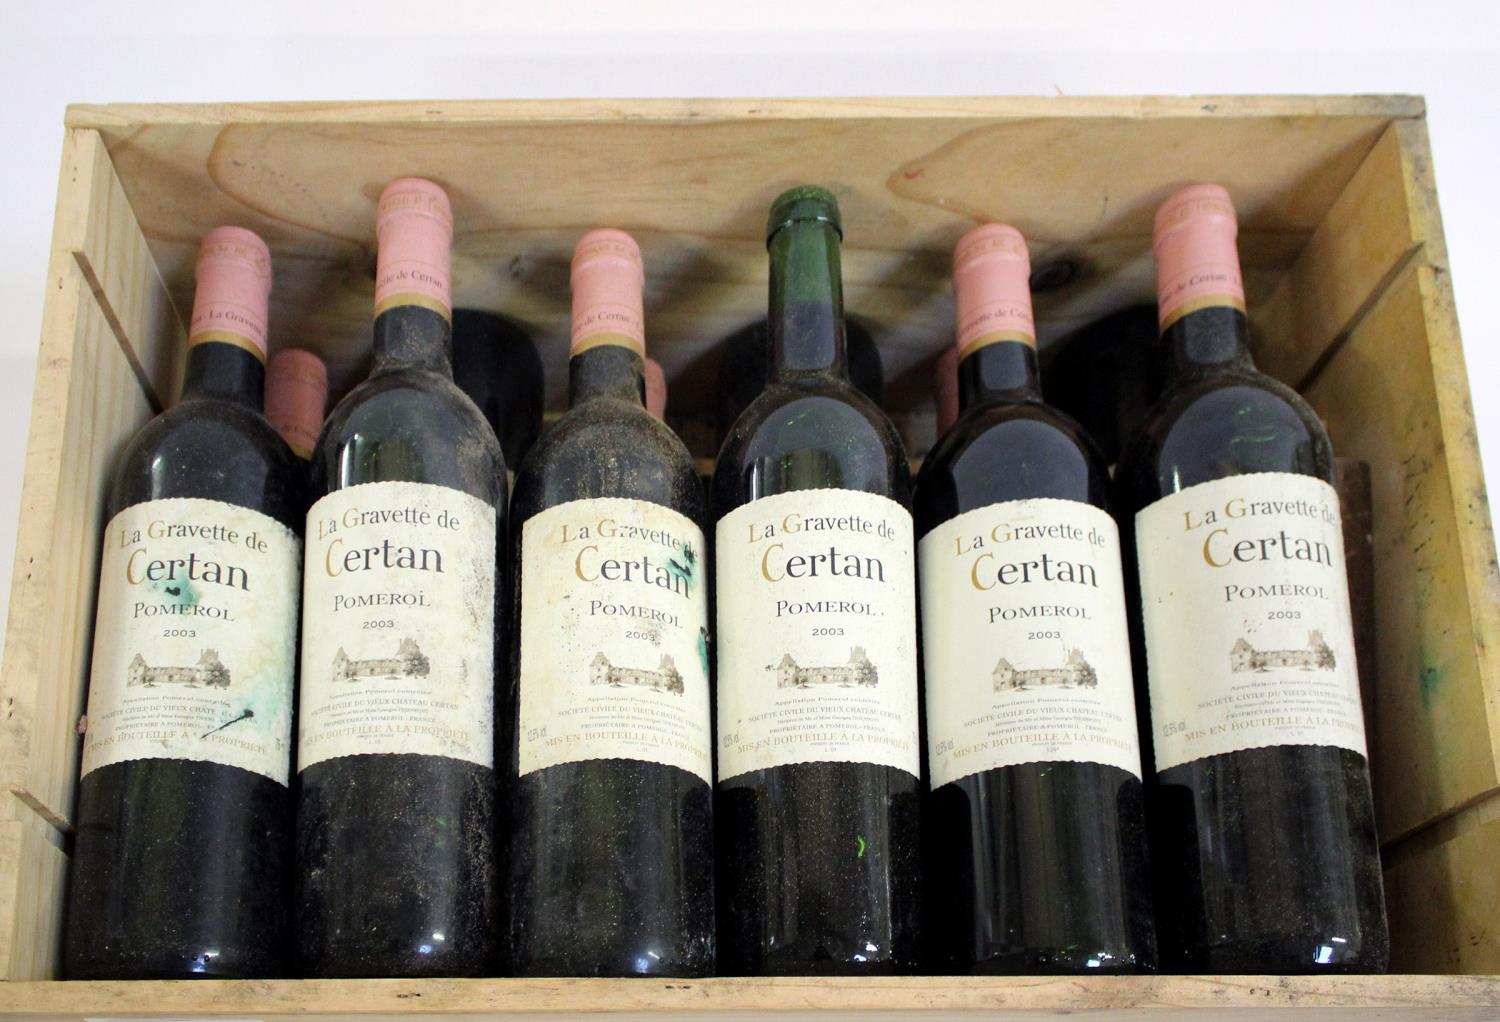 WINE - LA GRAVETTE DE CERTAN POMEROL 12 bottles from 2003, in part of a wooden case. (12)